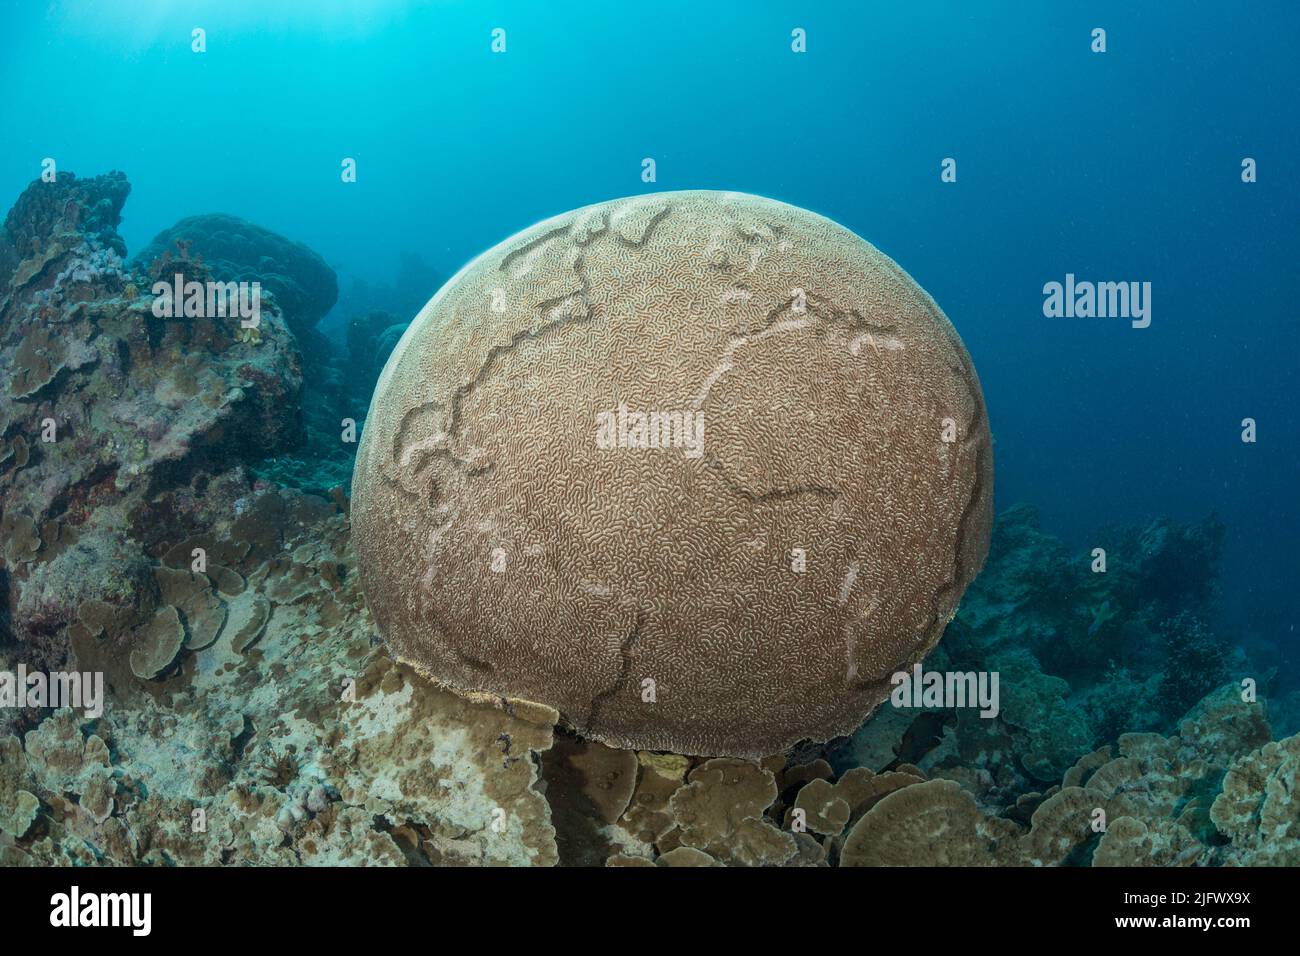 Esta es una imagen conceptual digital compuesta del globo en relieve sobre una cabeza submarina de coral cerebral tropical. Concepto de protección del medio ambiente. Foto de stock